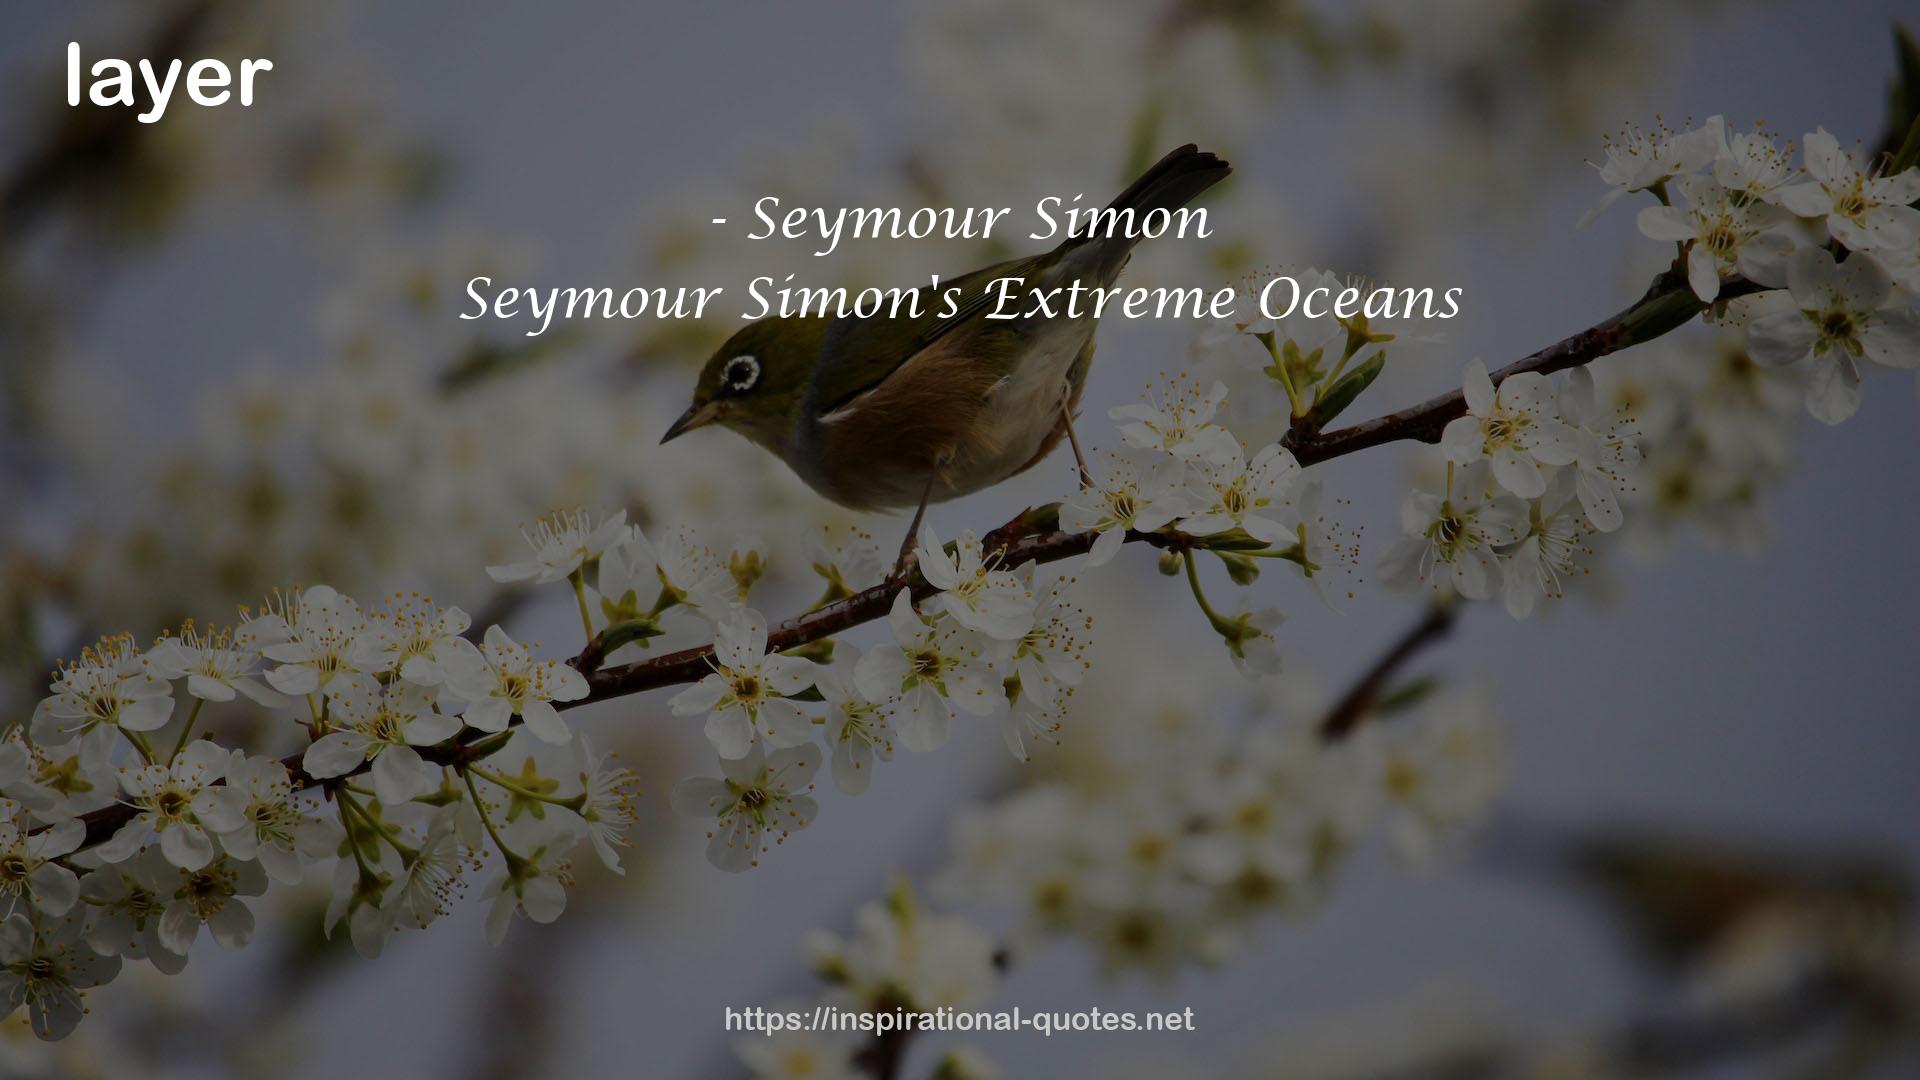 Seymour Simon's Extreme Oceans QUOTES